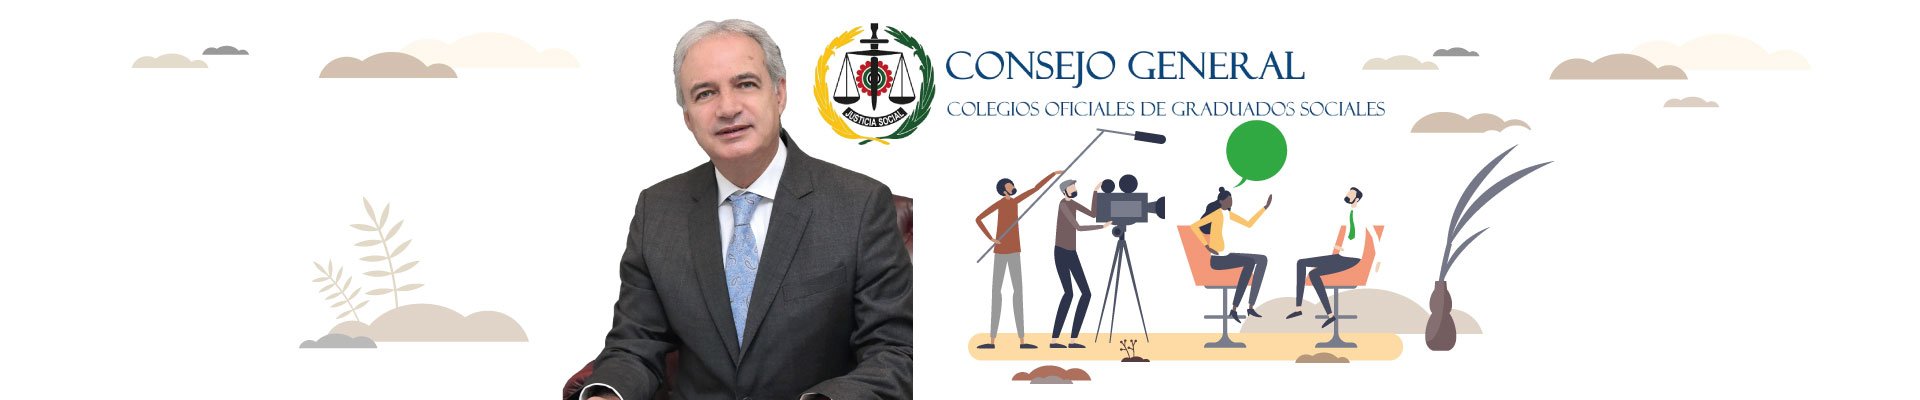 Entrevista a Ricardo Gabaldón, presidente del Consejo General de Colegios Oficiales de Graduados Sociales de España